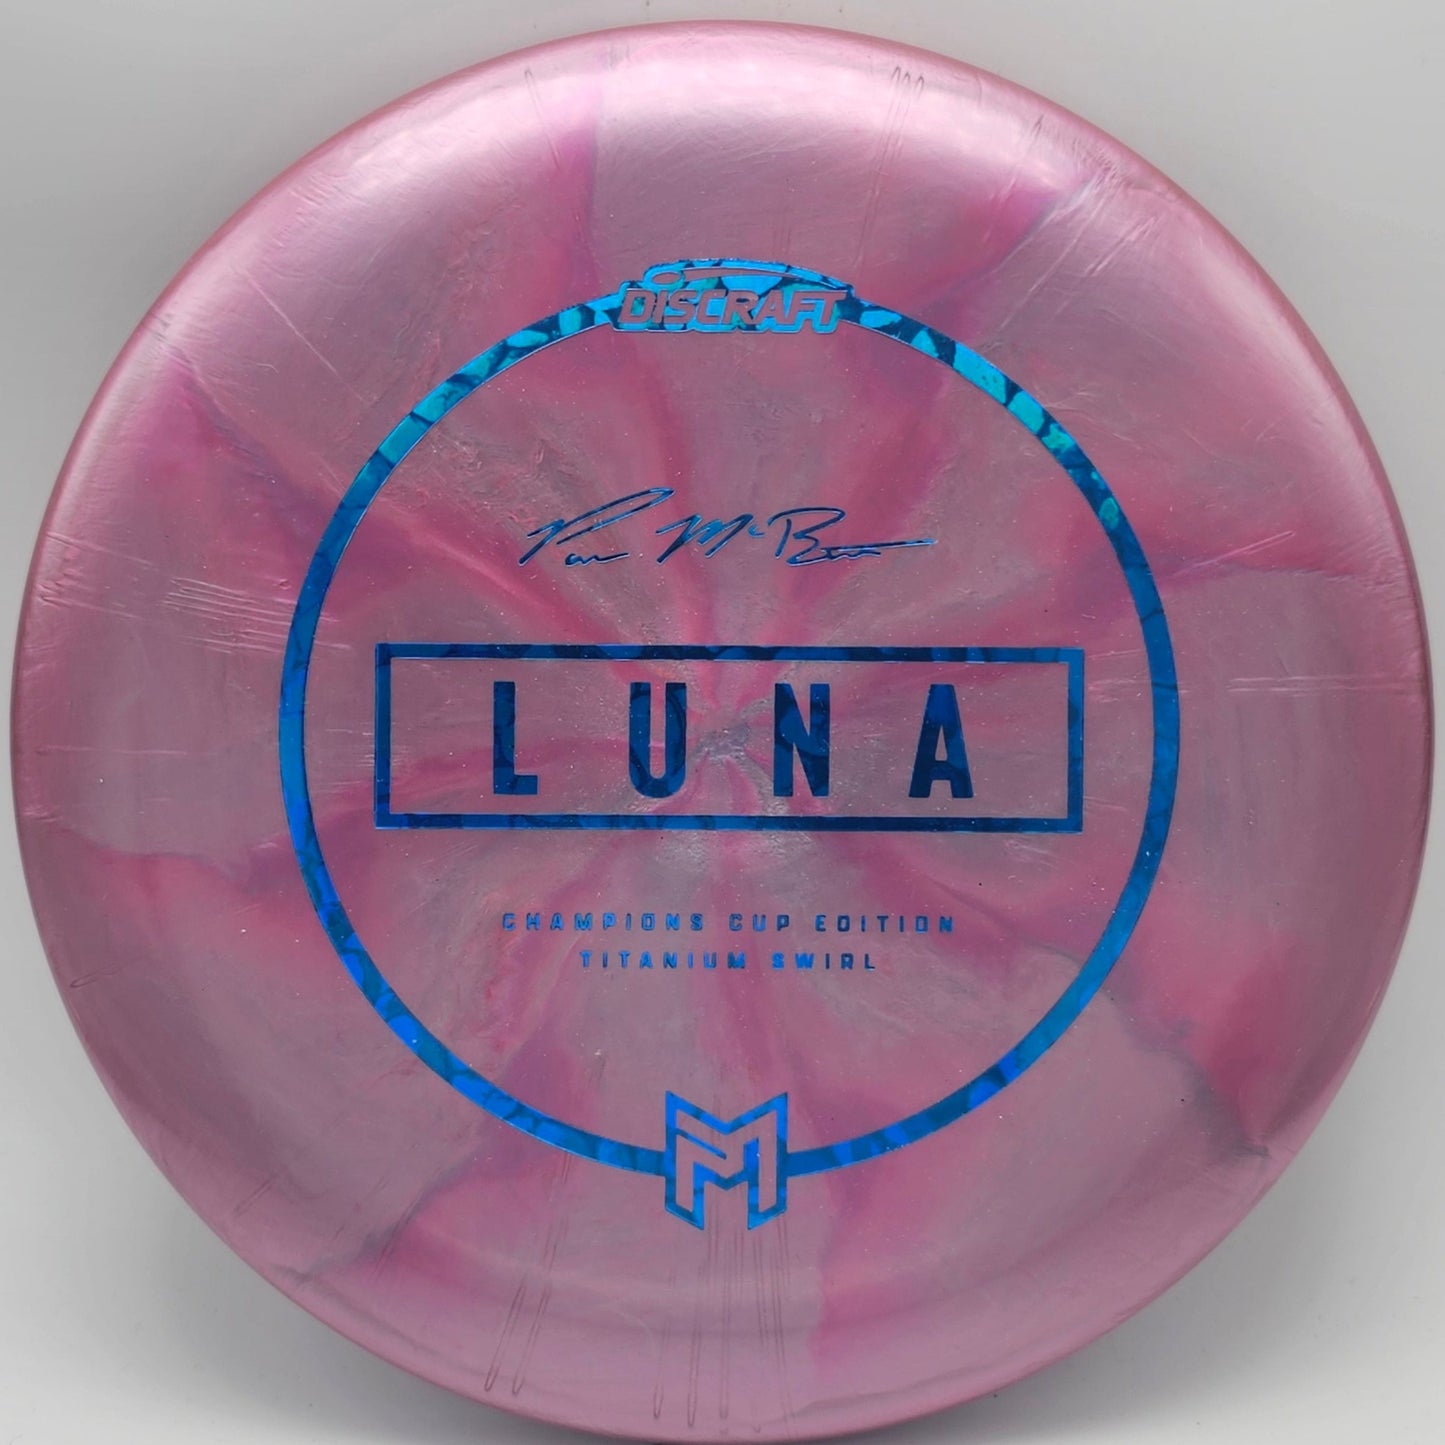 Discraft Titanium Ti Swirl Luna - Champions Cup